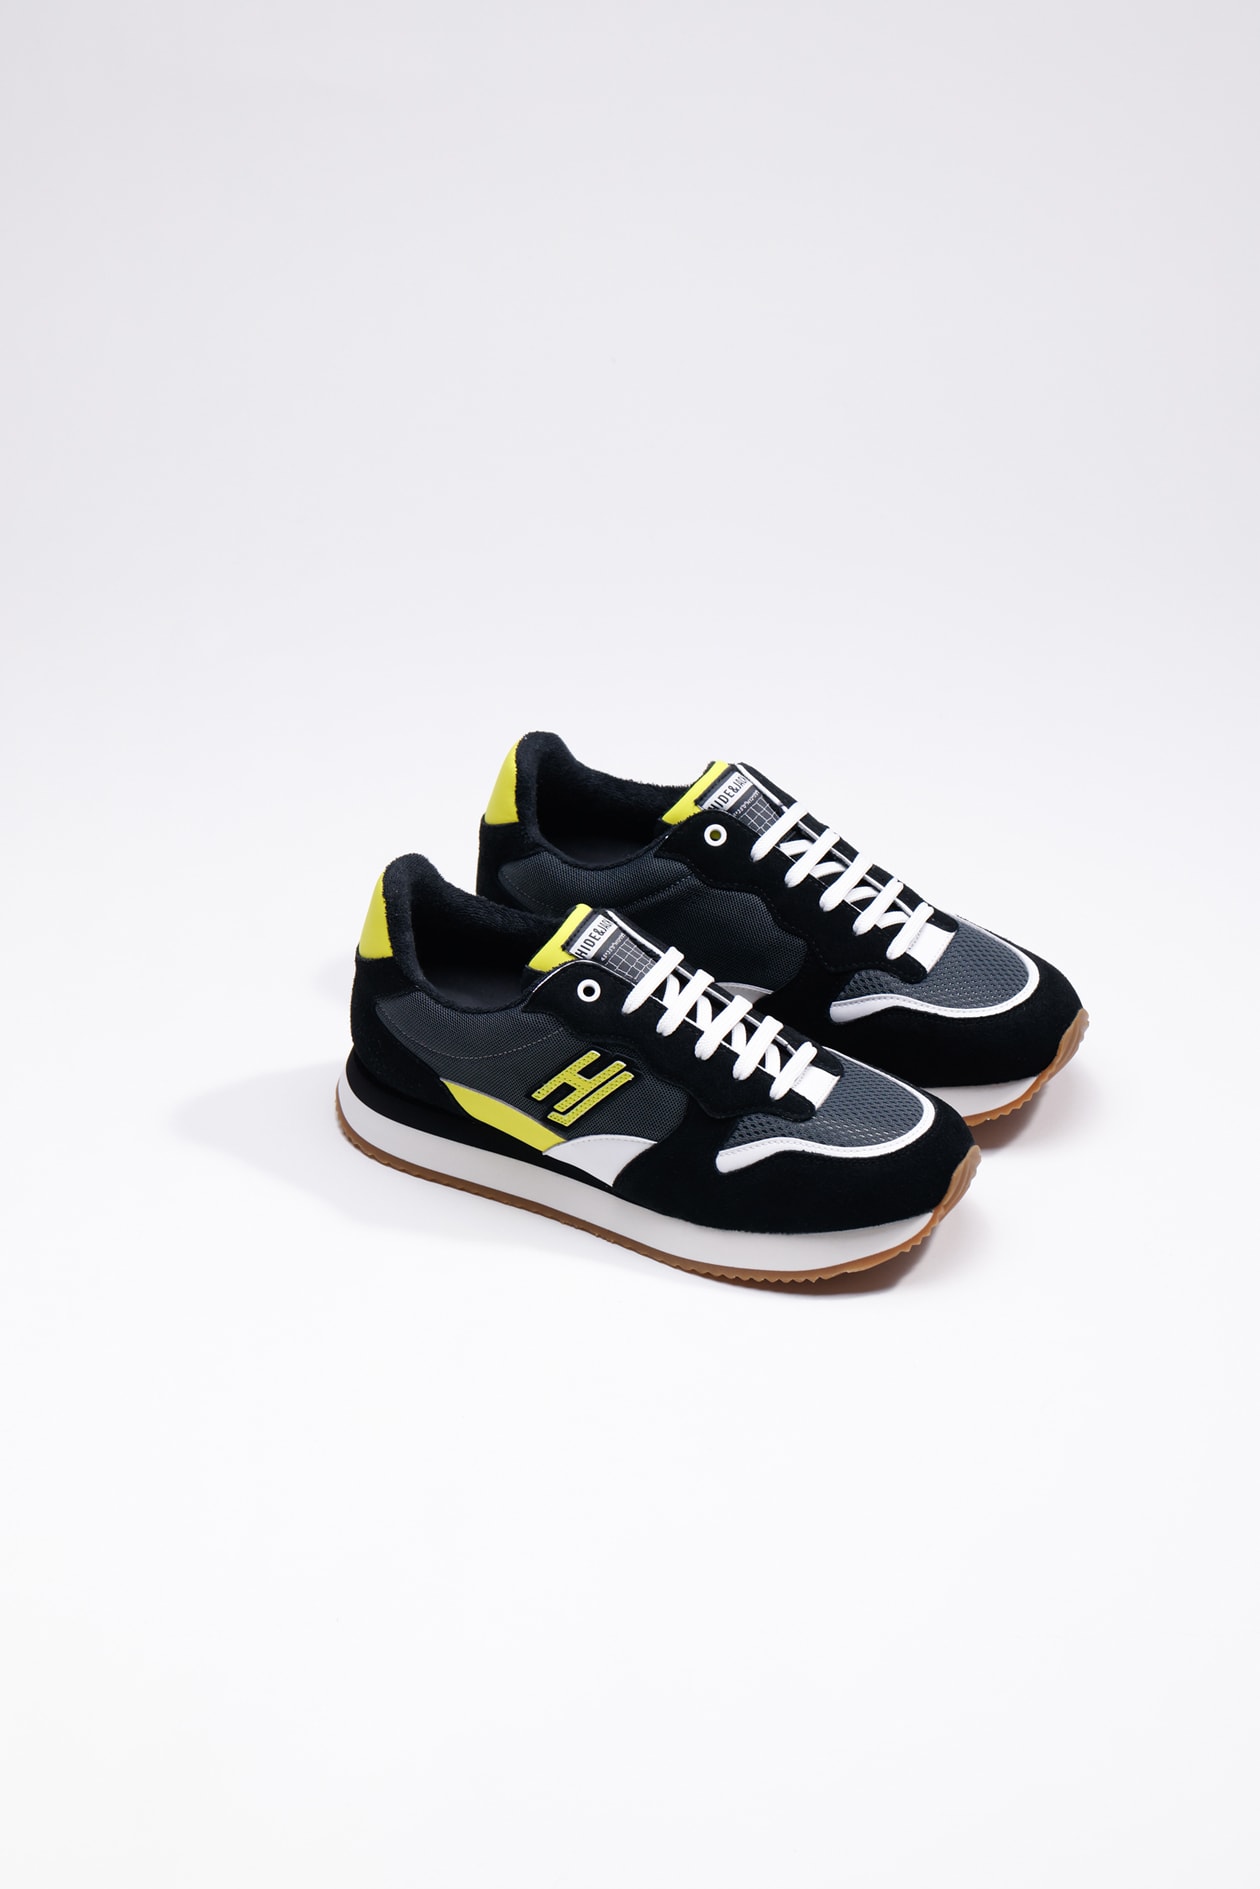 Hide & Jack Low Top Sneaker - Over Black Yellow